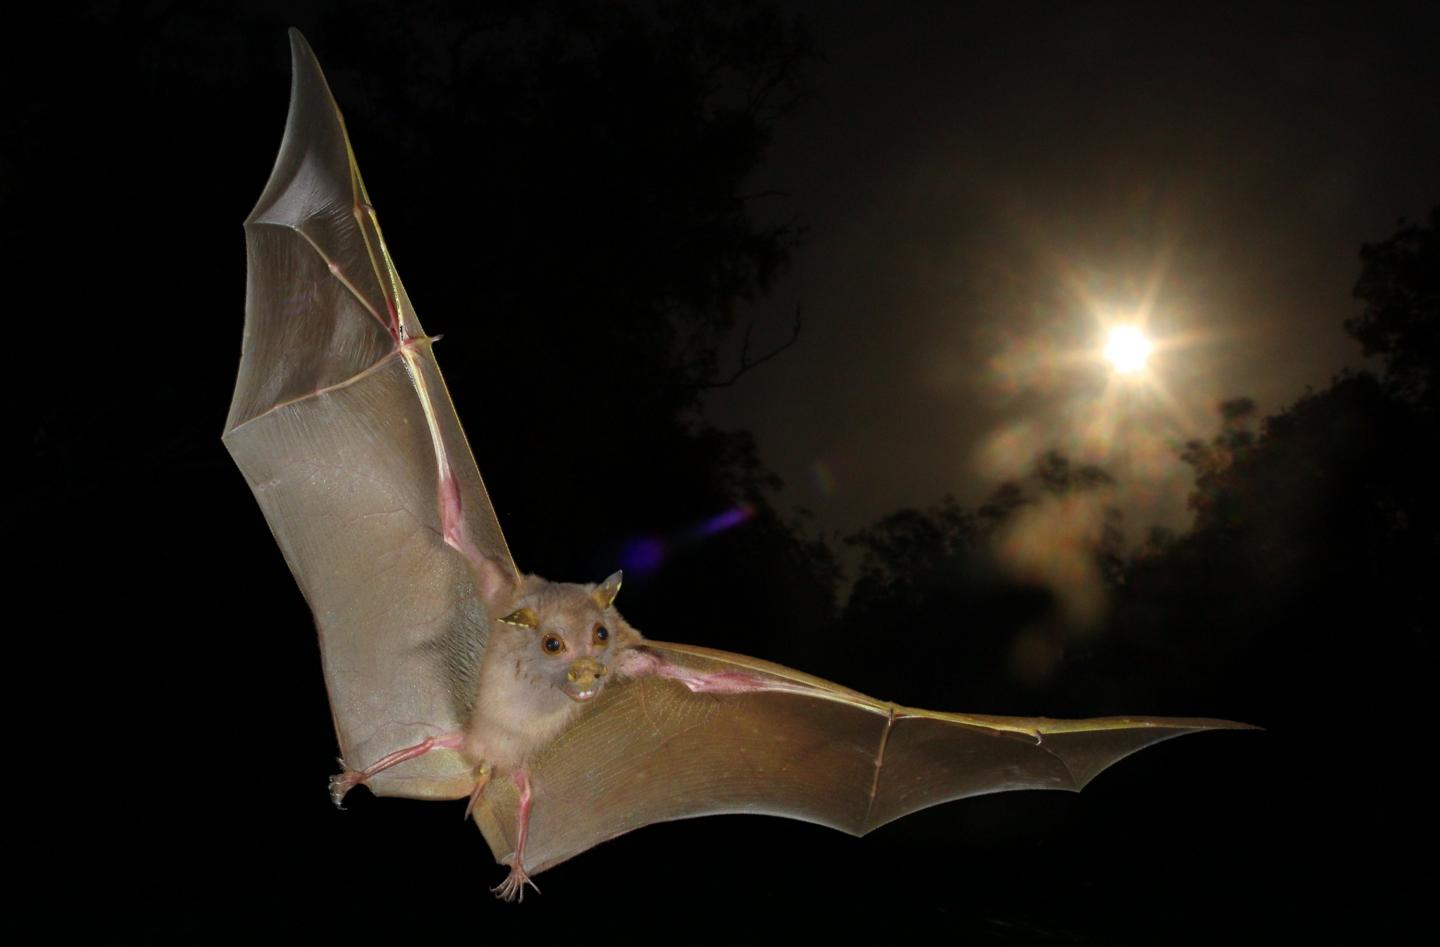 'Non-Echolocating' Fruit Bats Actually Do Echolocate, with Wing Clicks